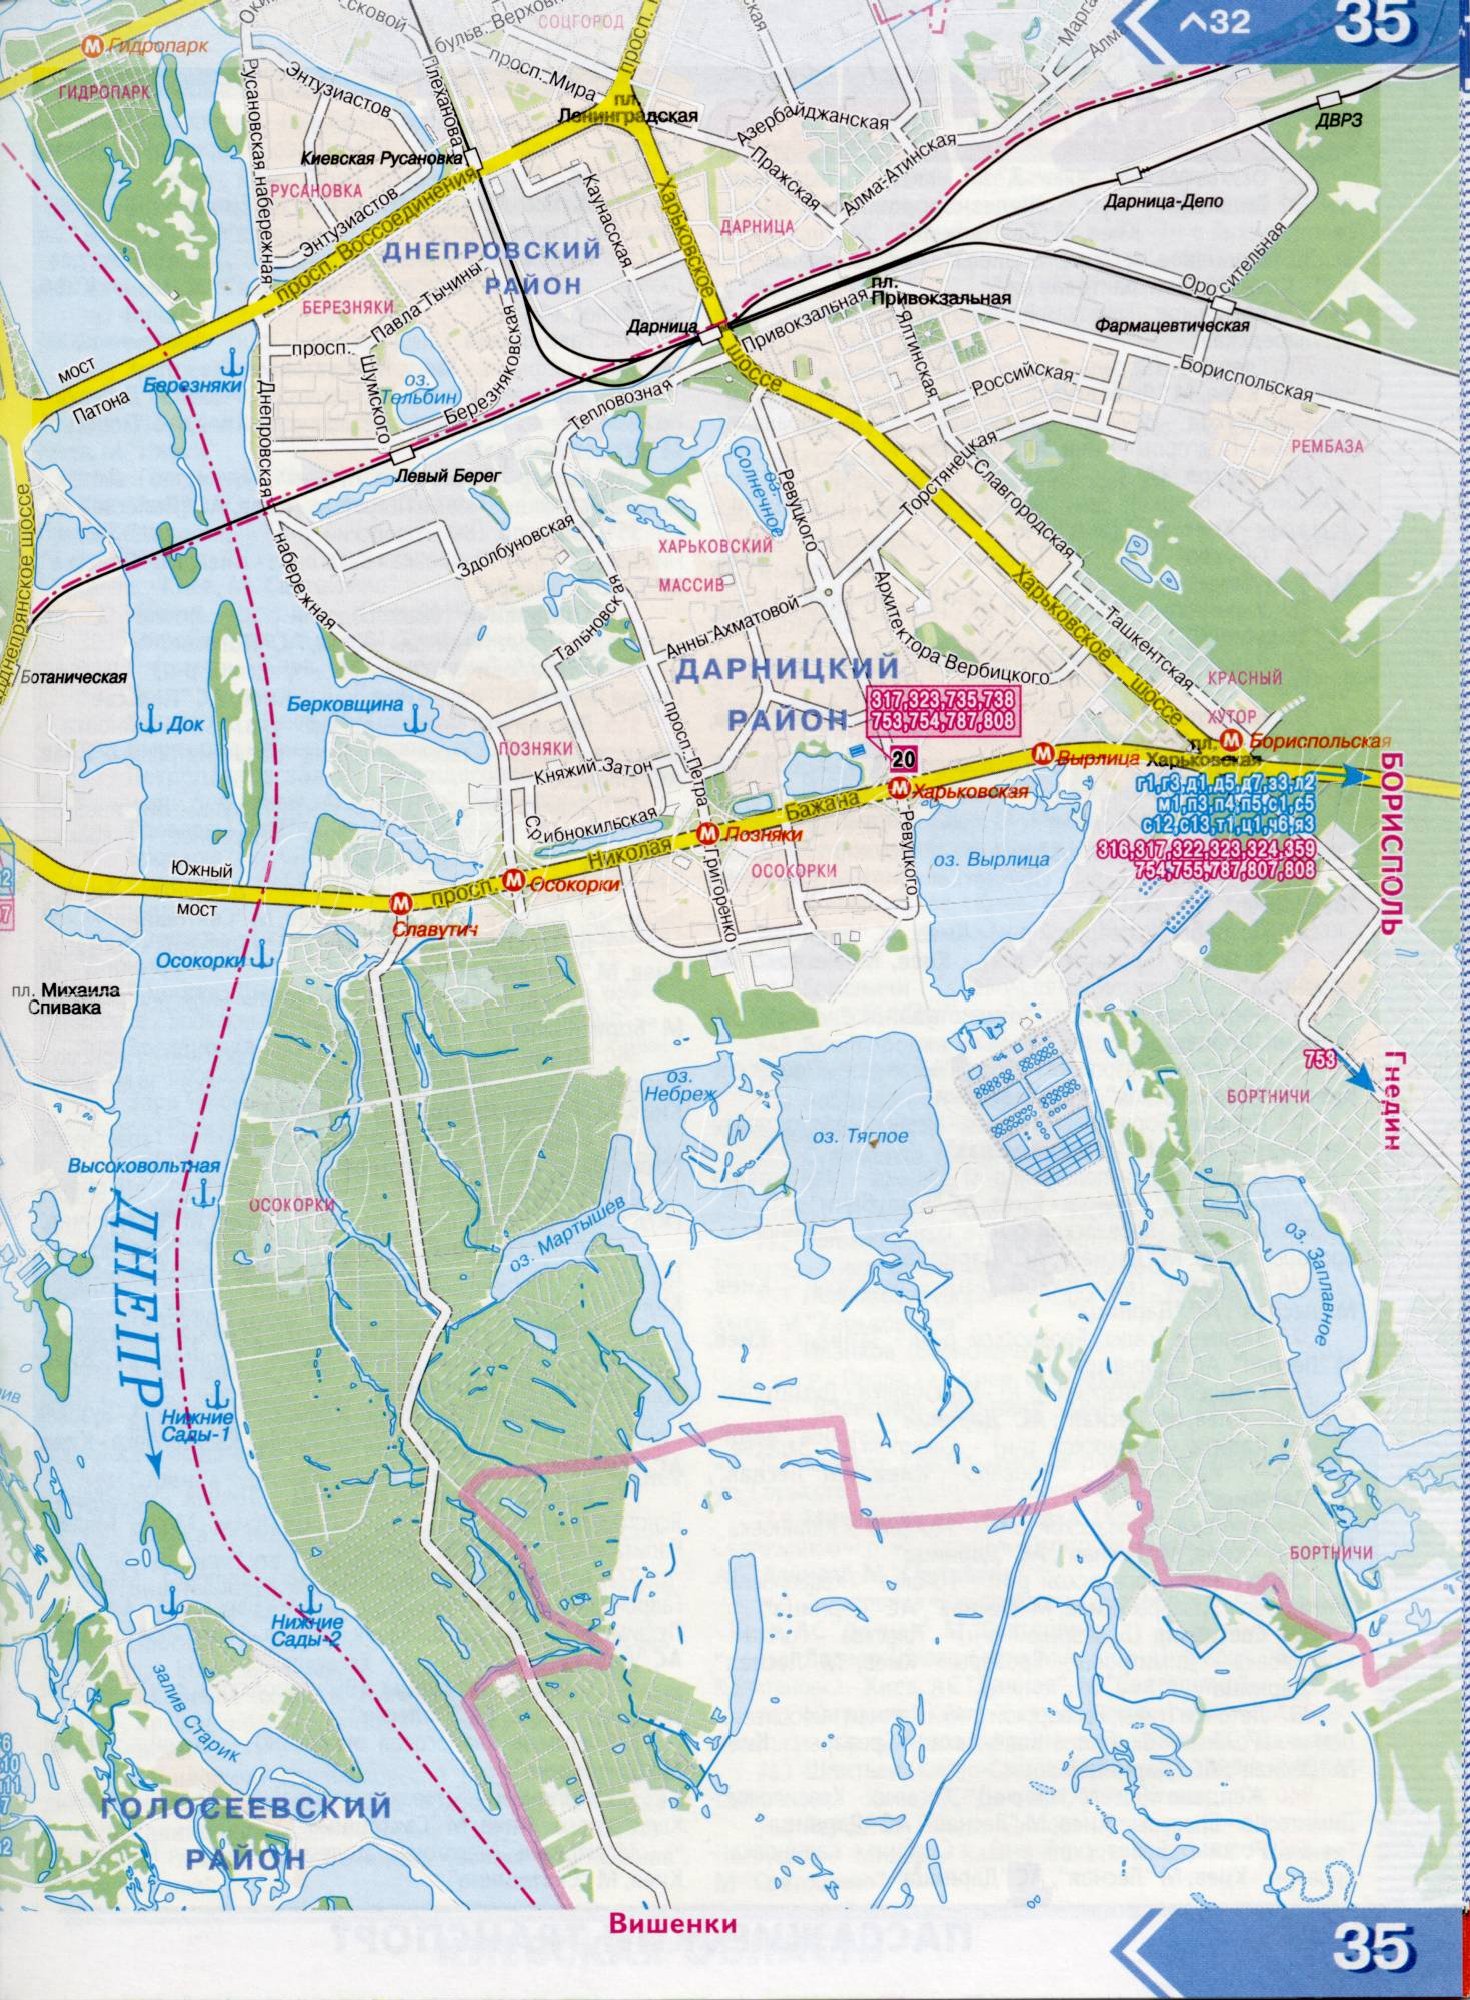 Карта Киева 1см-800м на 6 листах - основные автомобильные дороги города и окрестностей. Схема пригородного транспорта Киева. Скачать бесплатно, C1